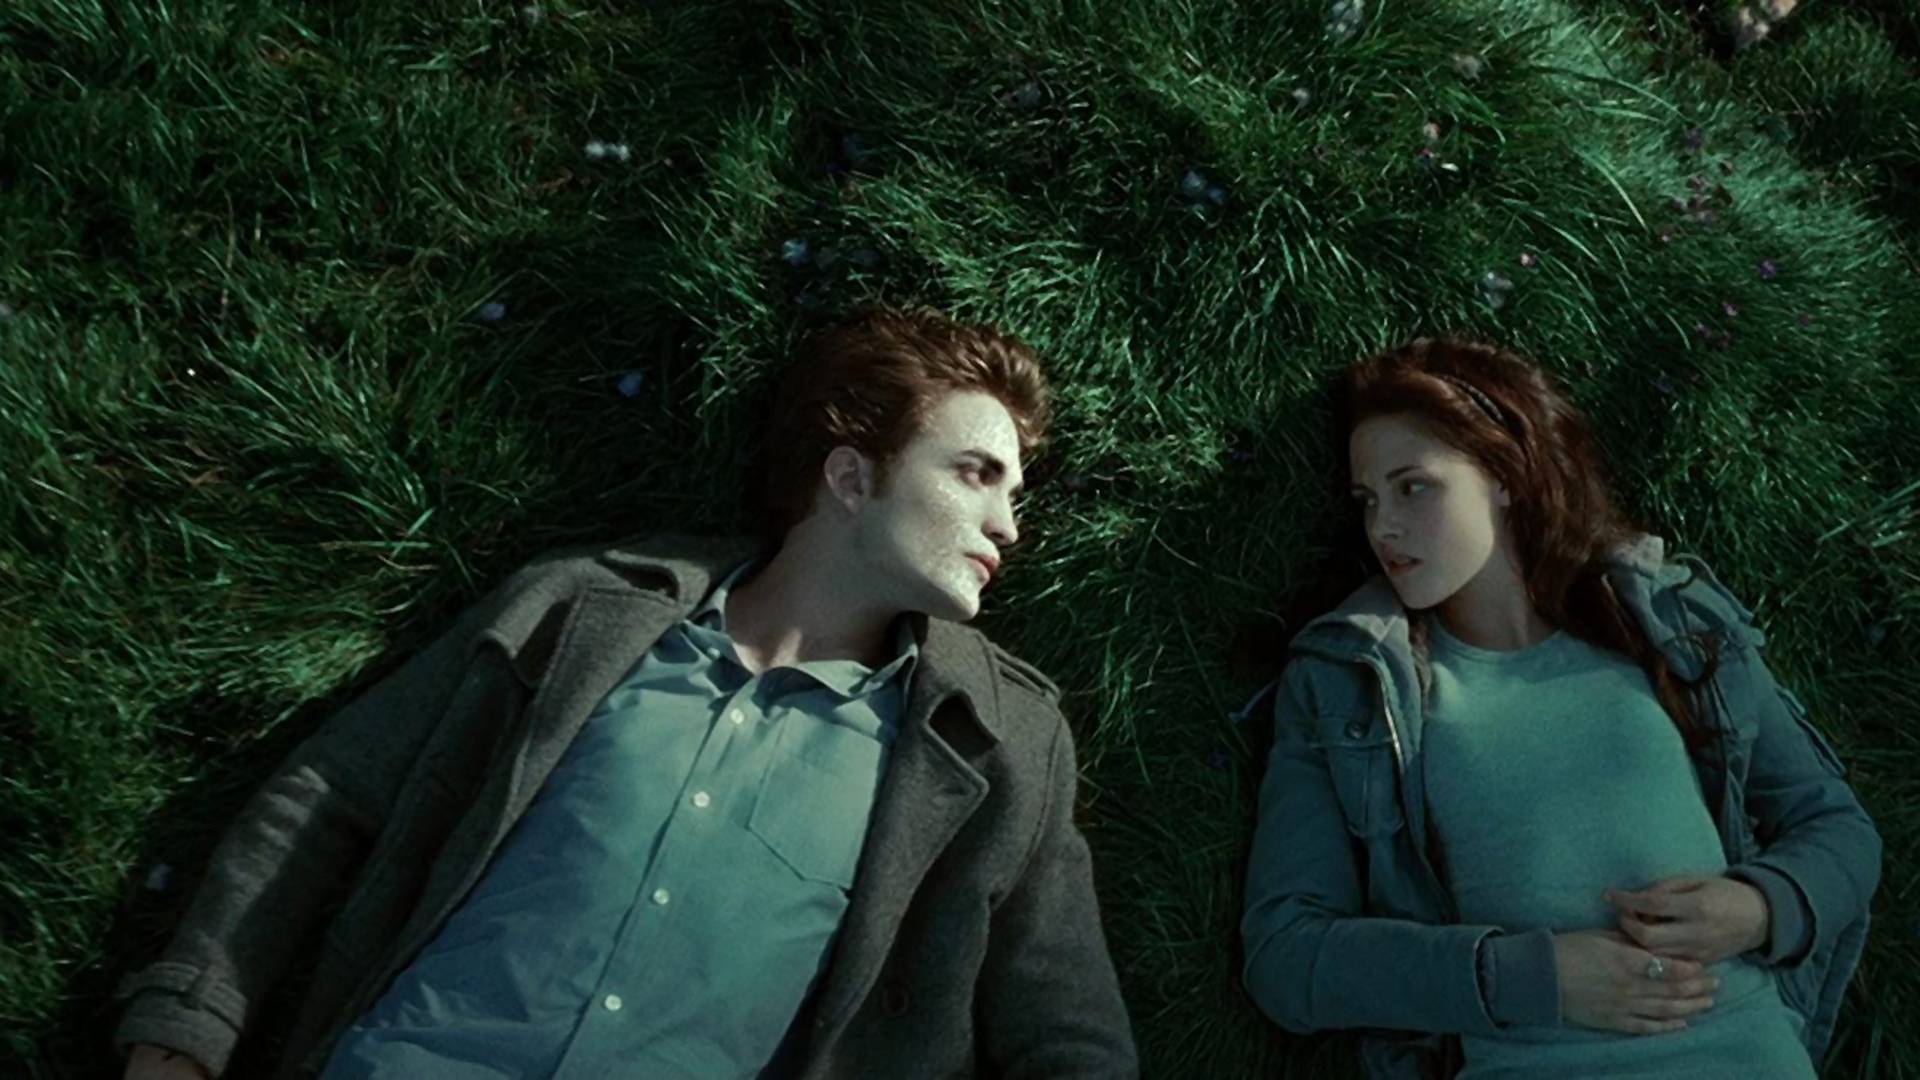 Bella i Edward wracają. "Midnight Sun" doczeka się oficjalnej publikacji. Znamy datę premiery